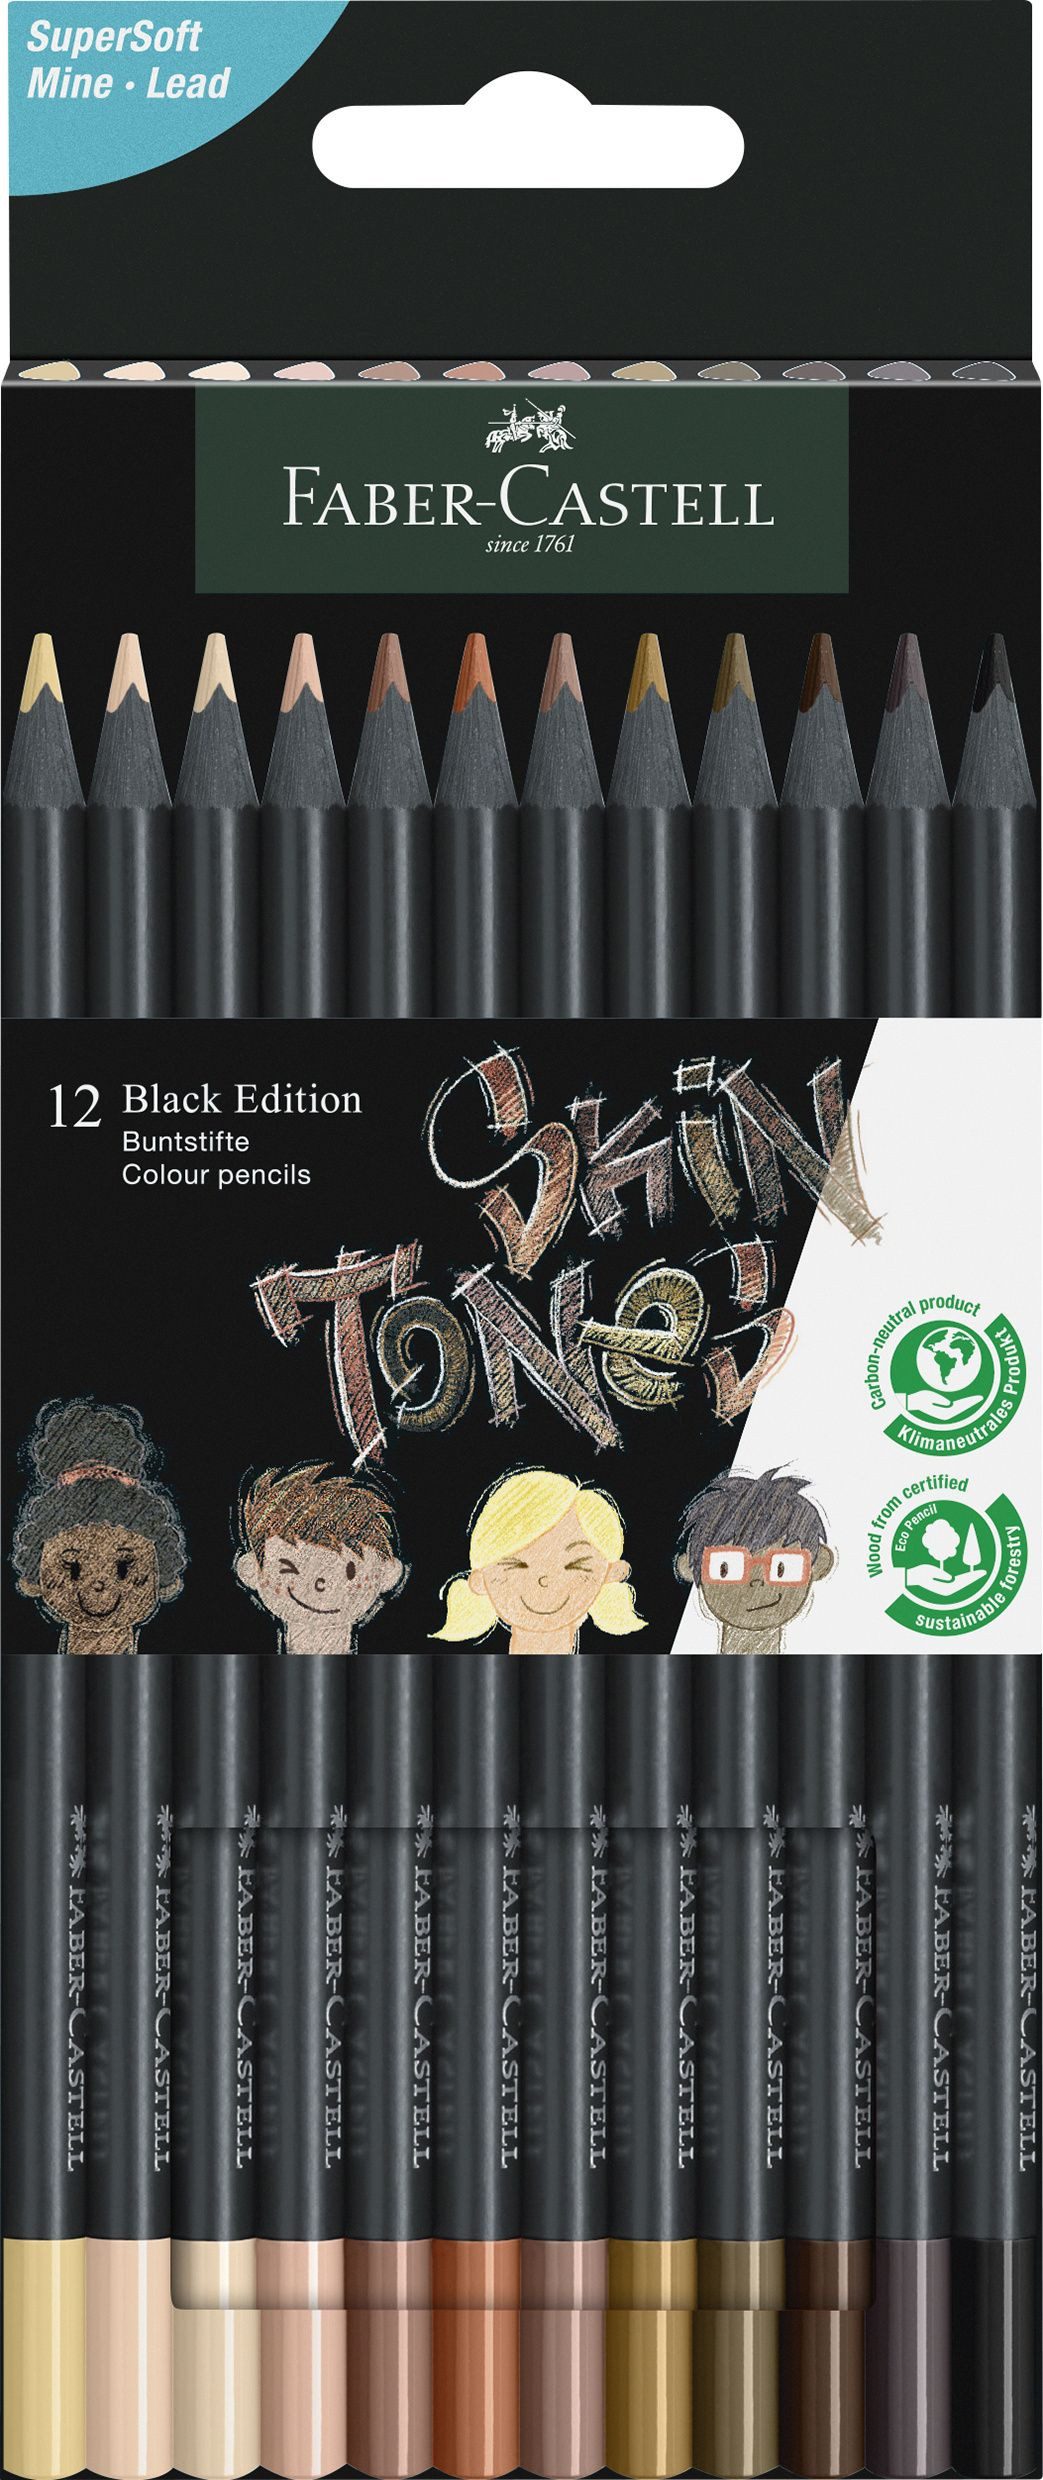 Faber-Castell Buntstift Buntstift Black Edition Skin Tones - 12er Etui, sortiert